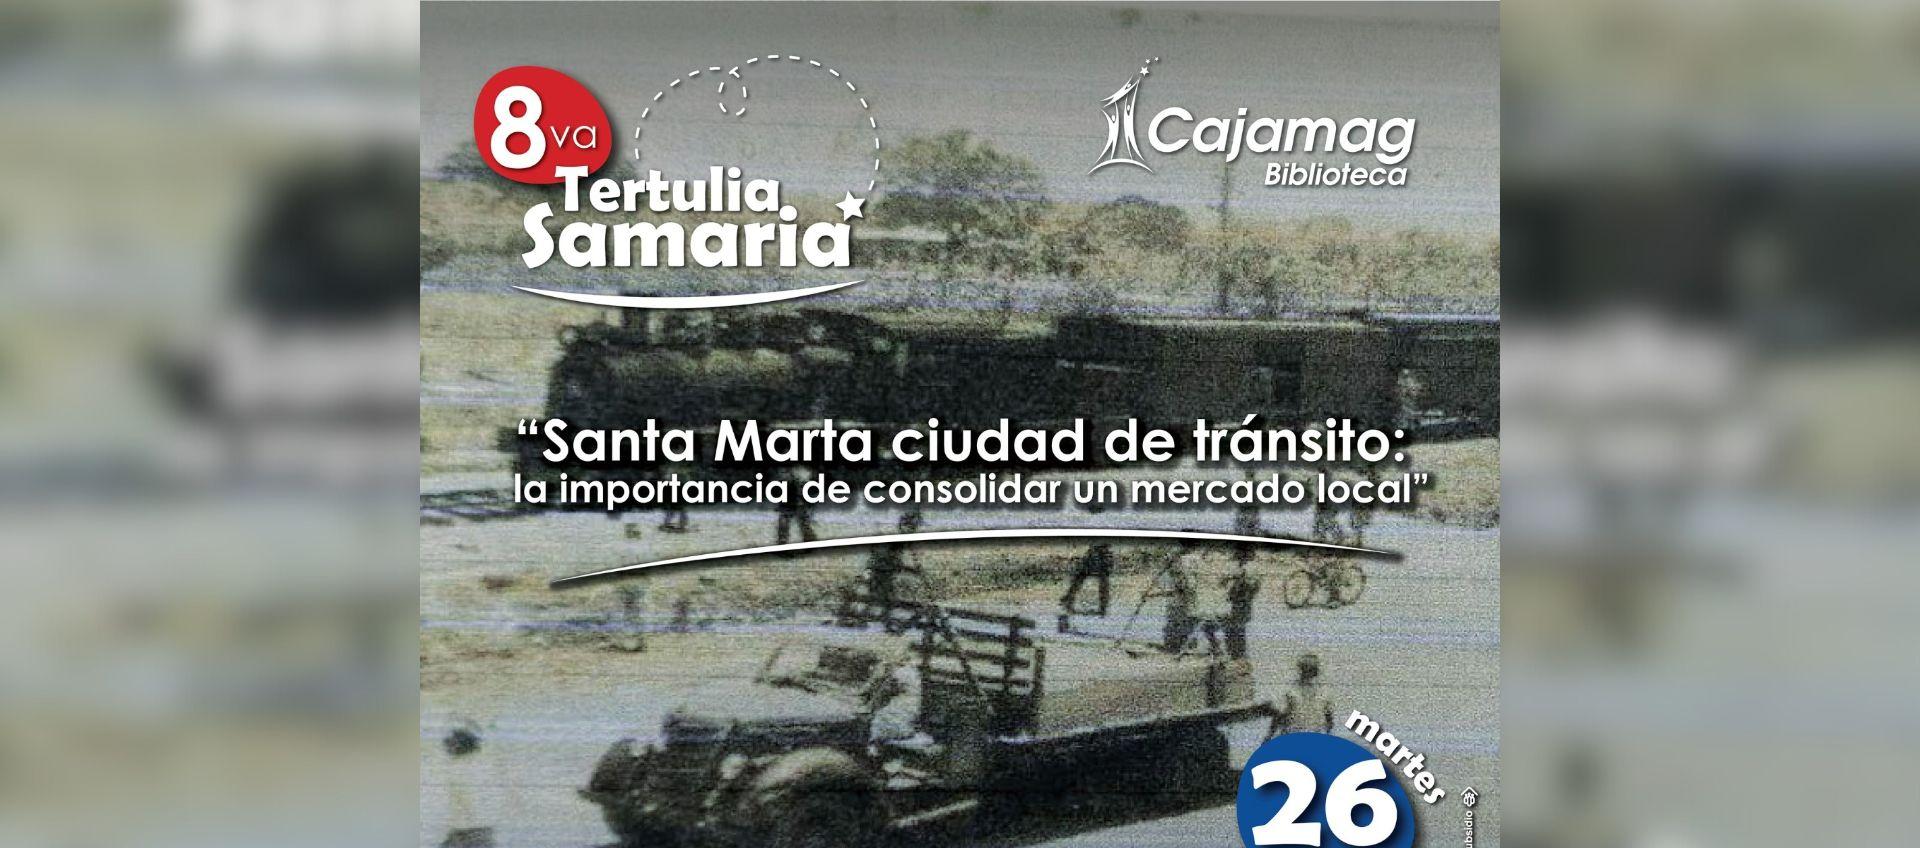 8va Tertulia Samaria de Cajamag.